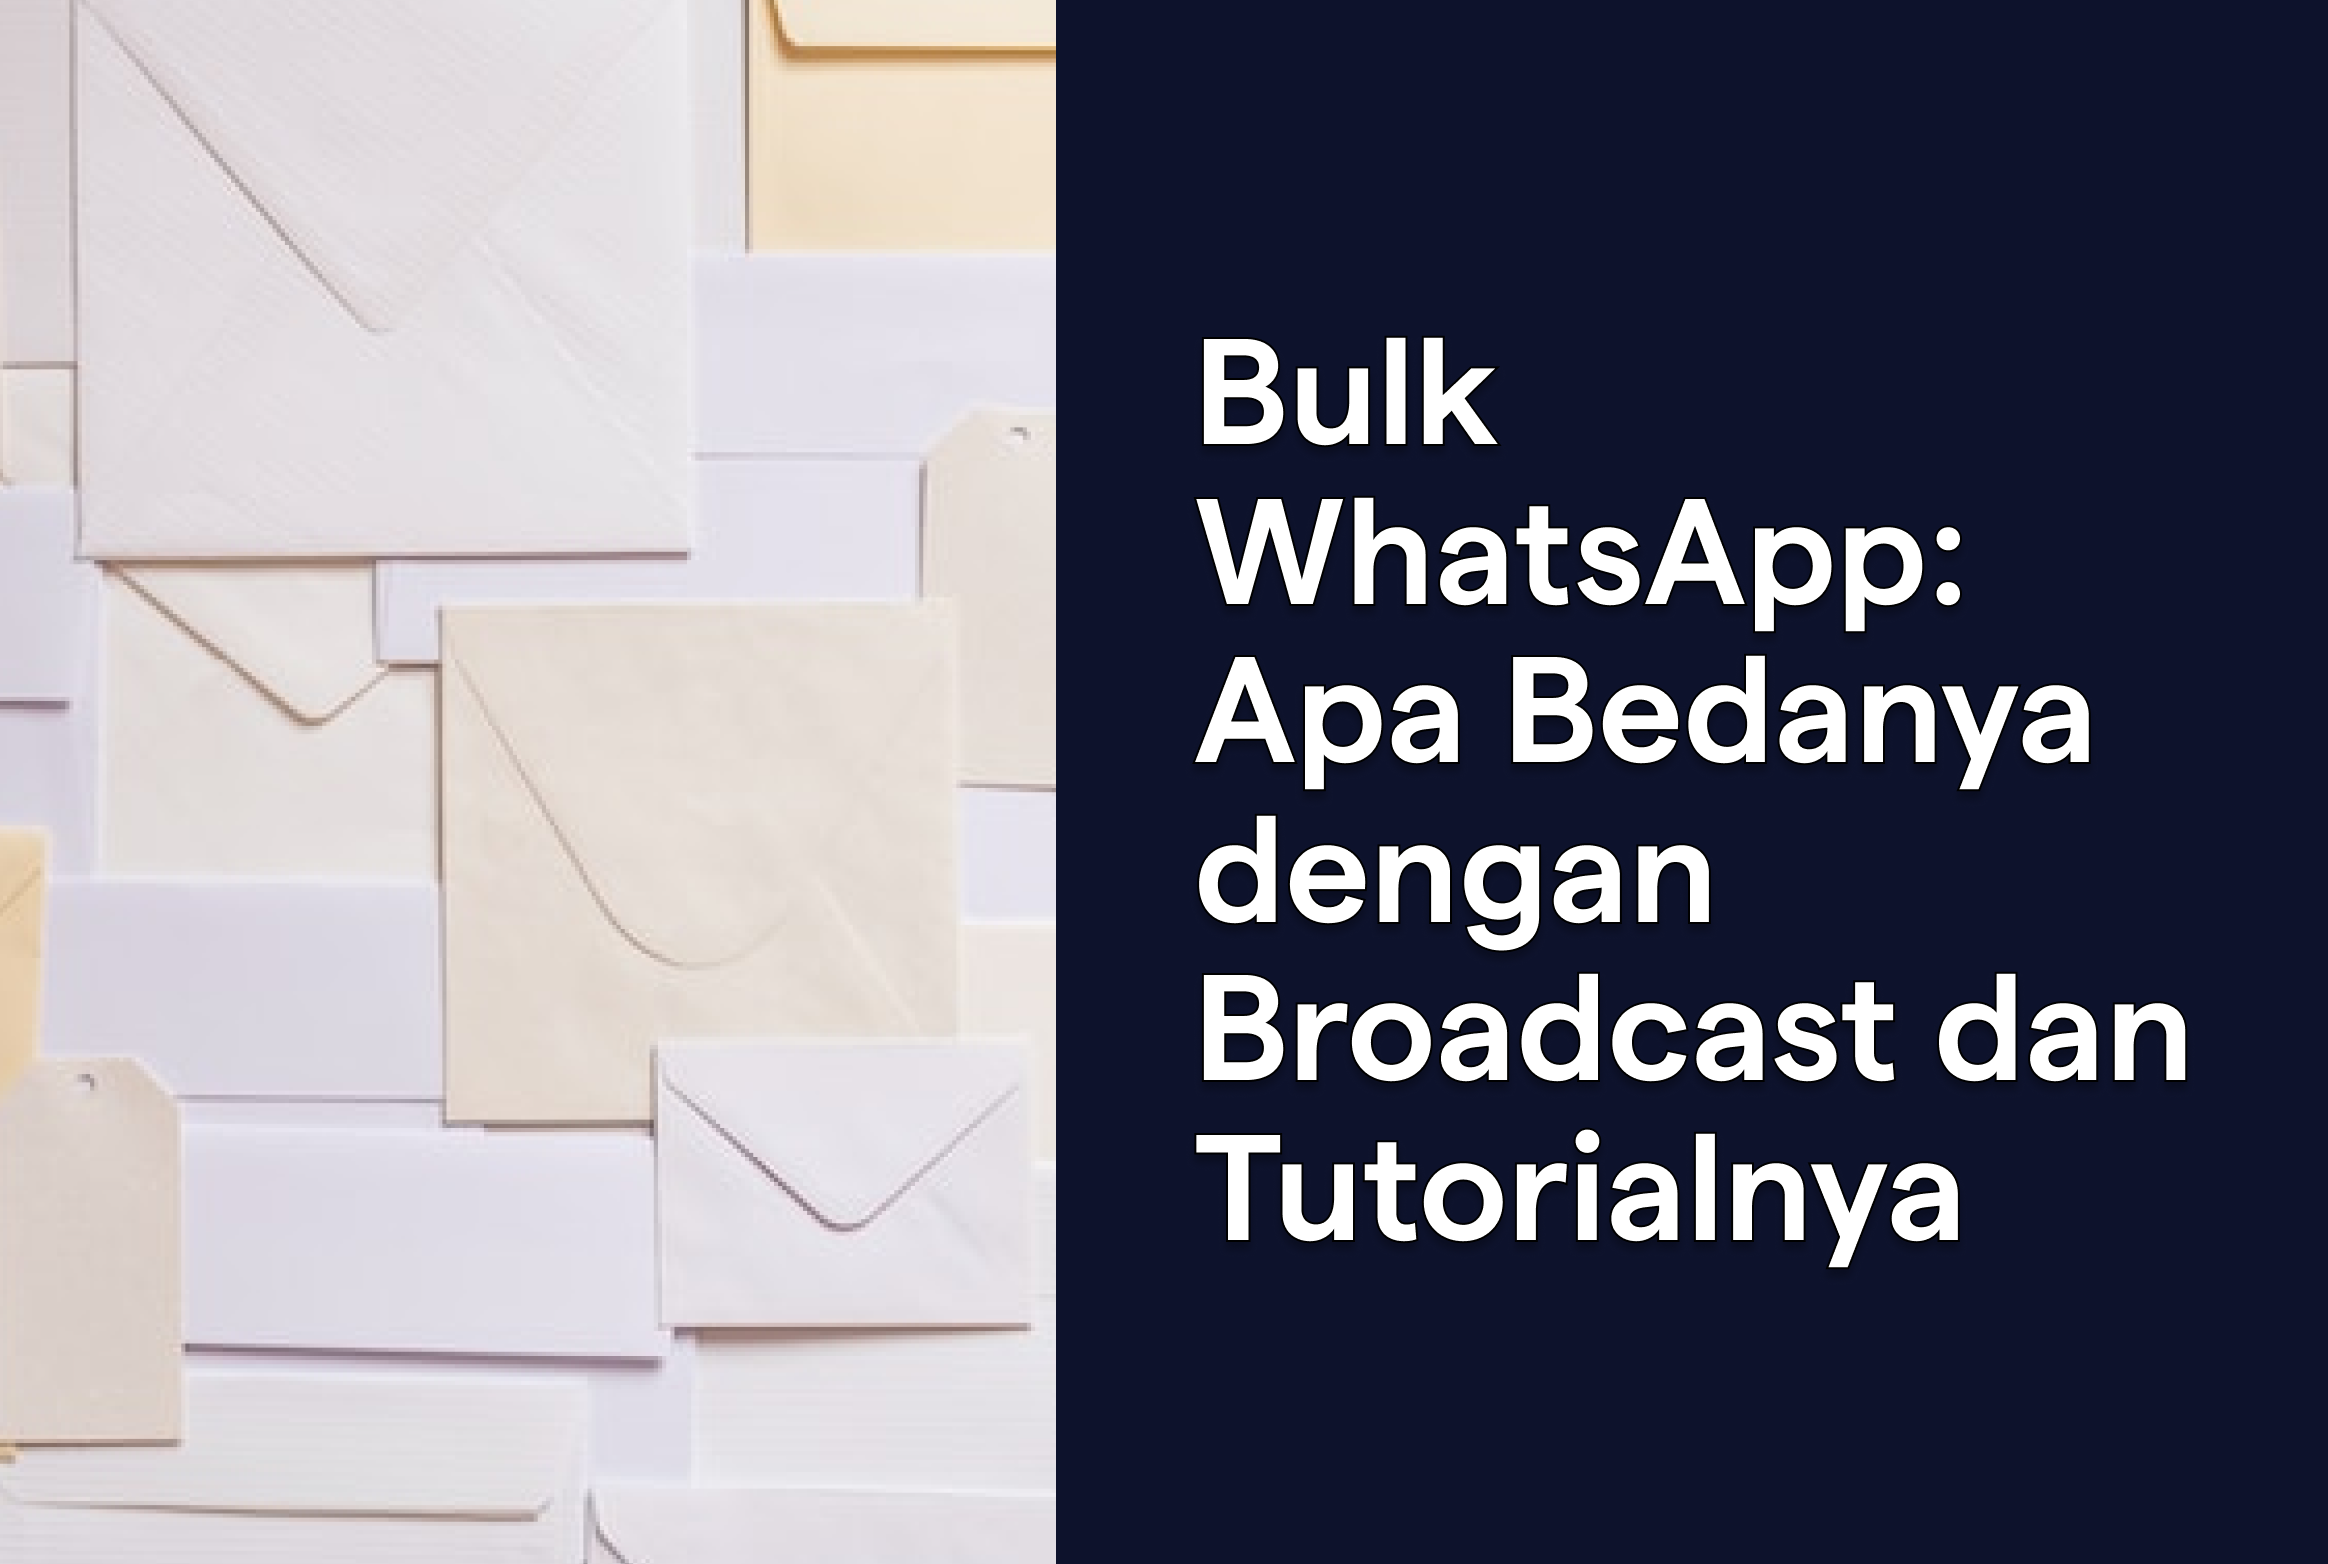 Bulk WhatsApp: Apa Bedanya dengan Broadcast dan Tutorialnya